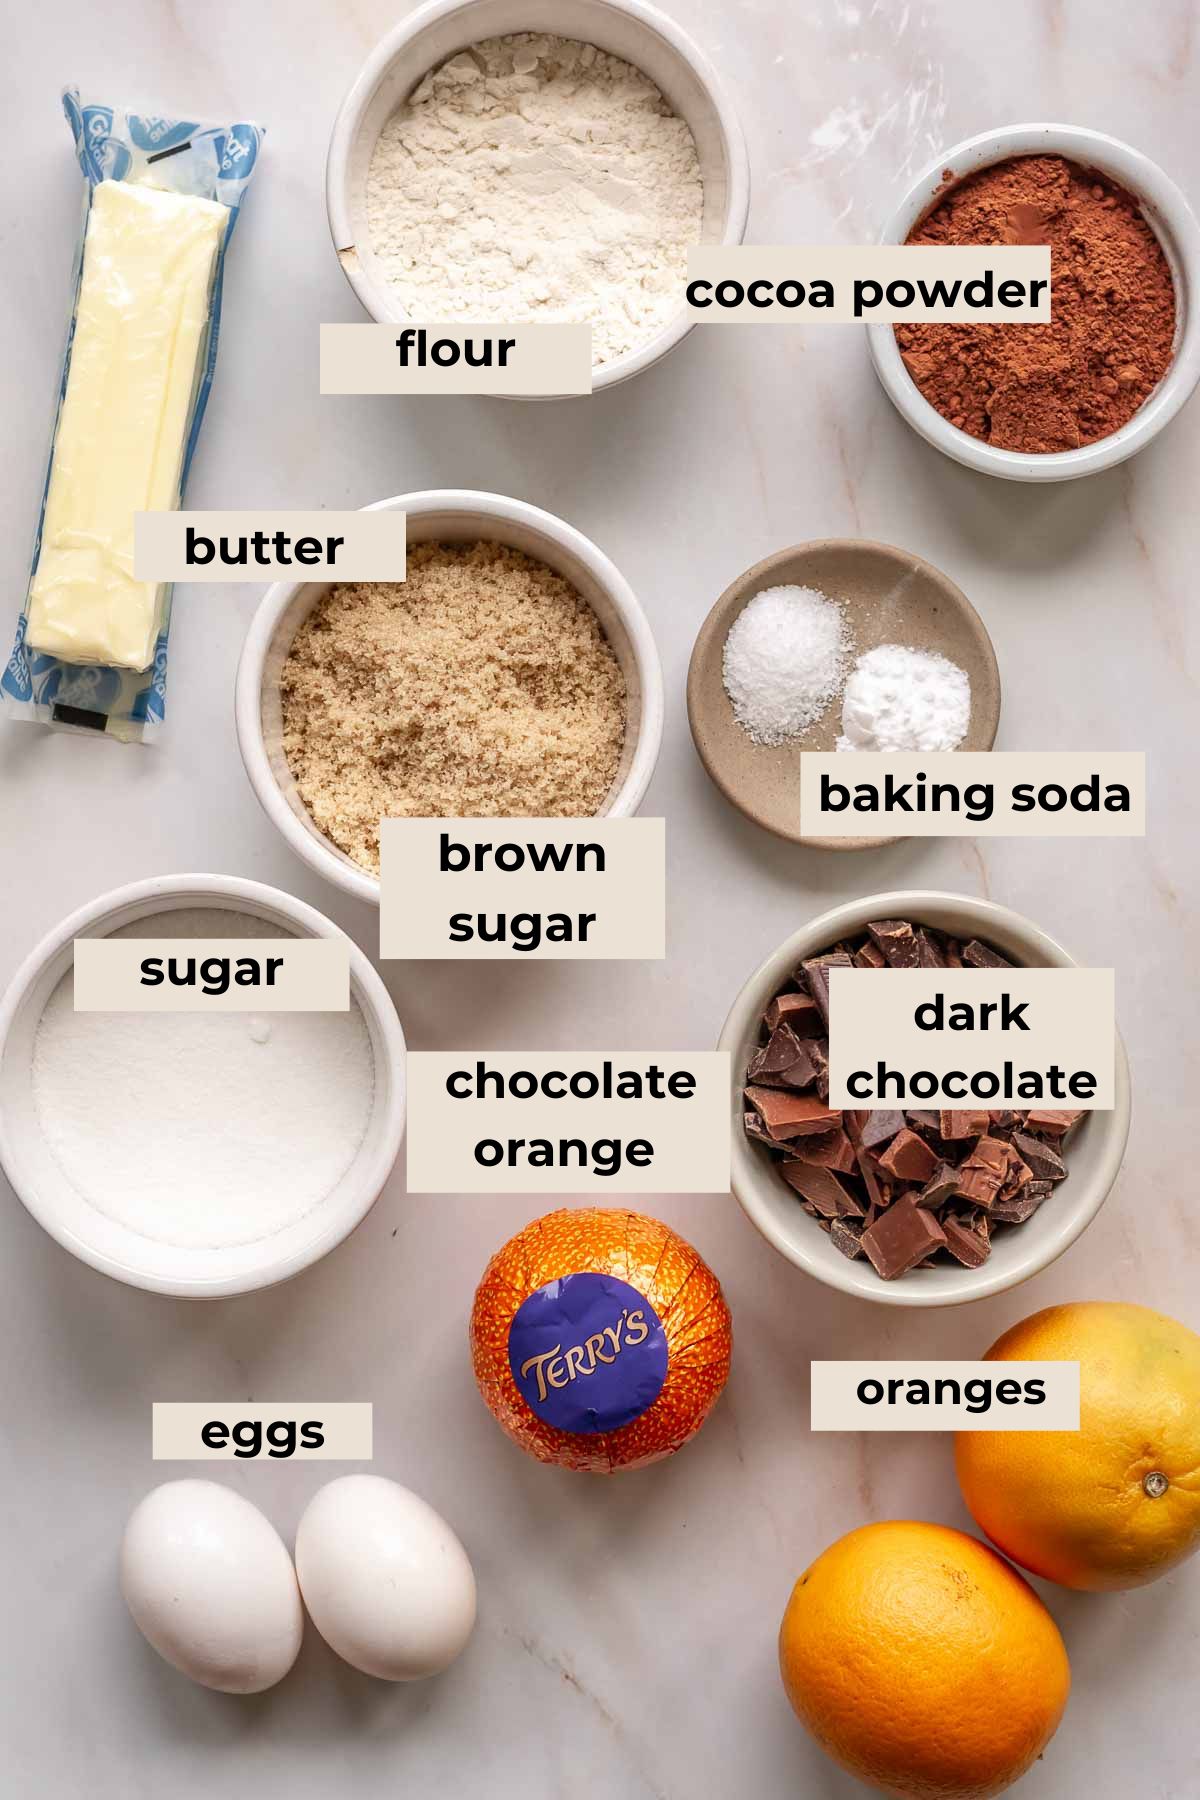 Ingredients for chocolate orange cookies.